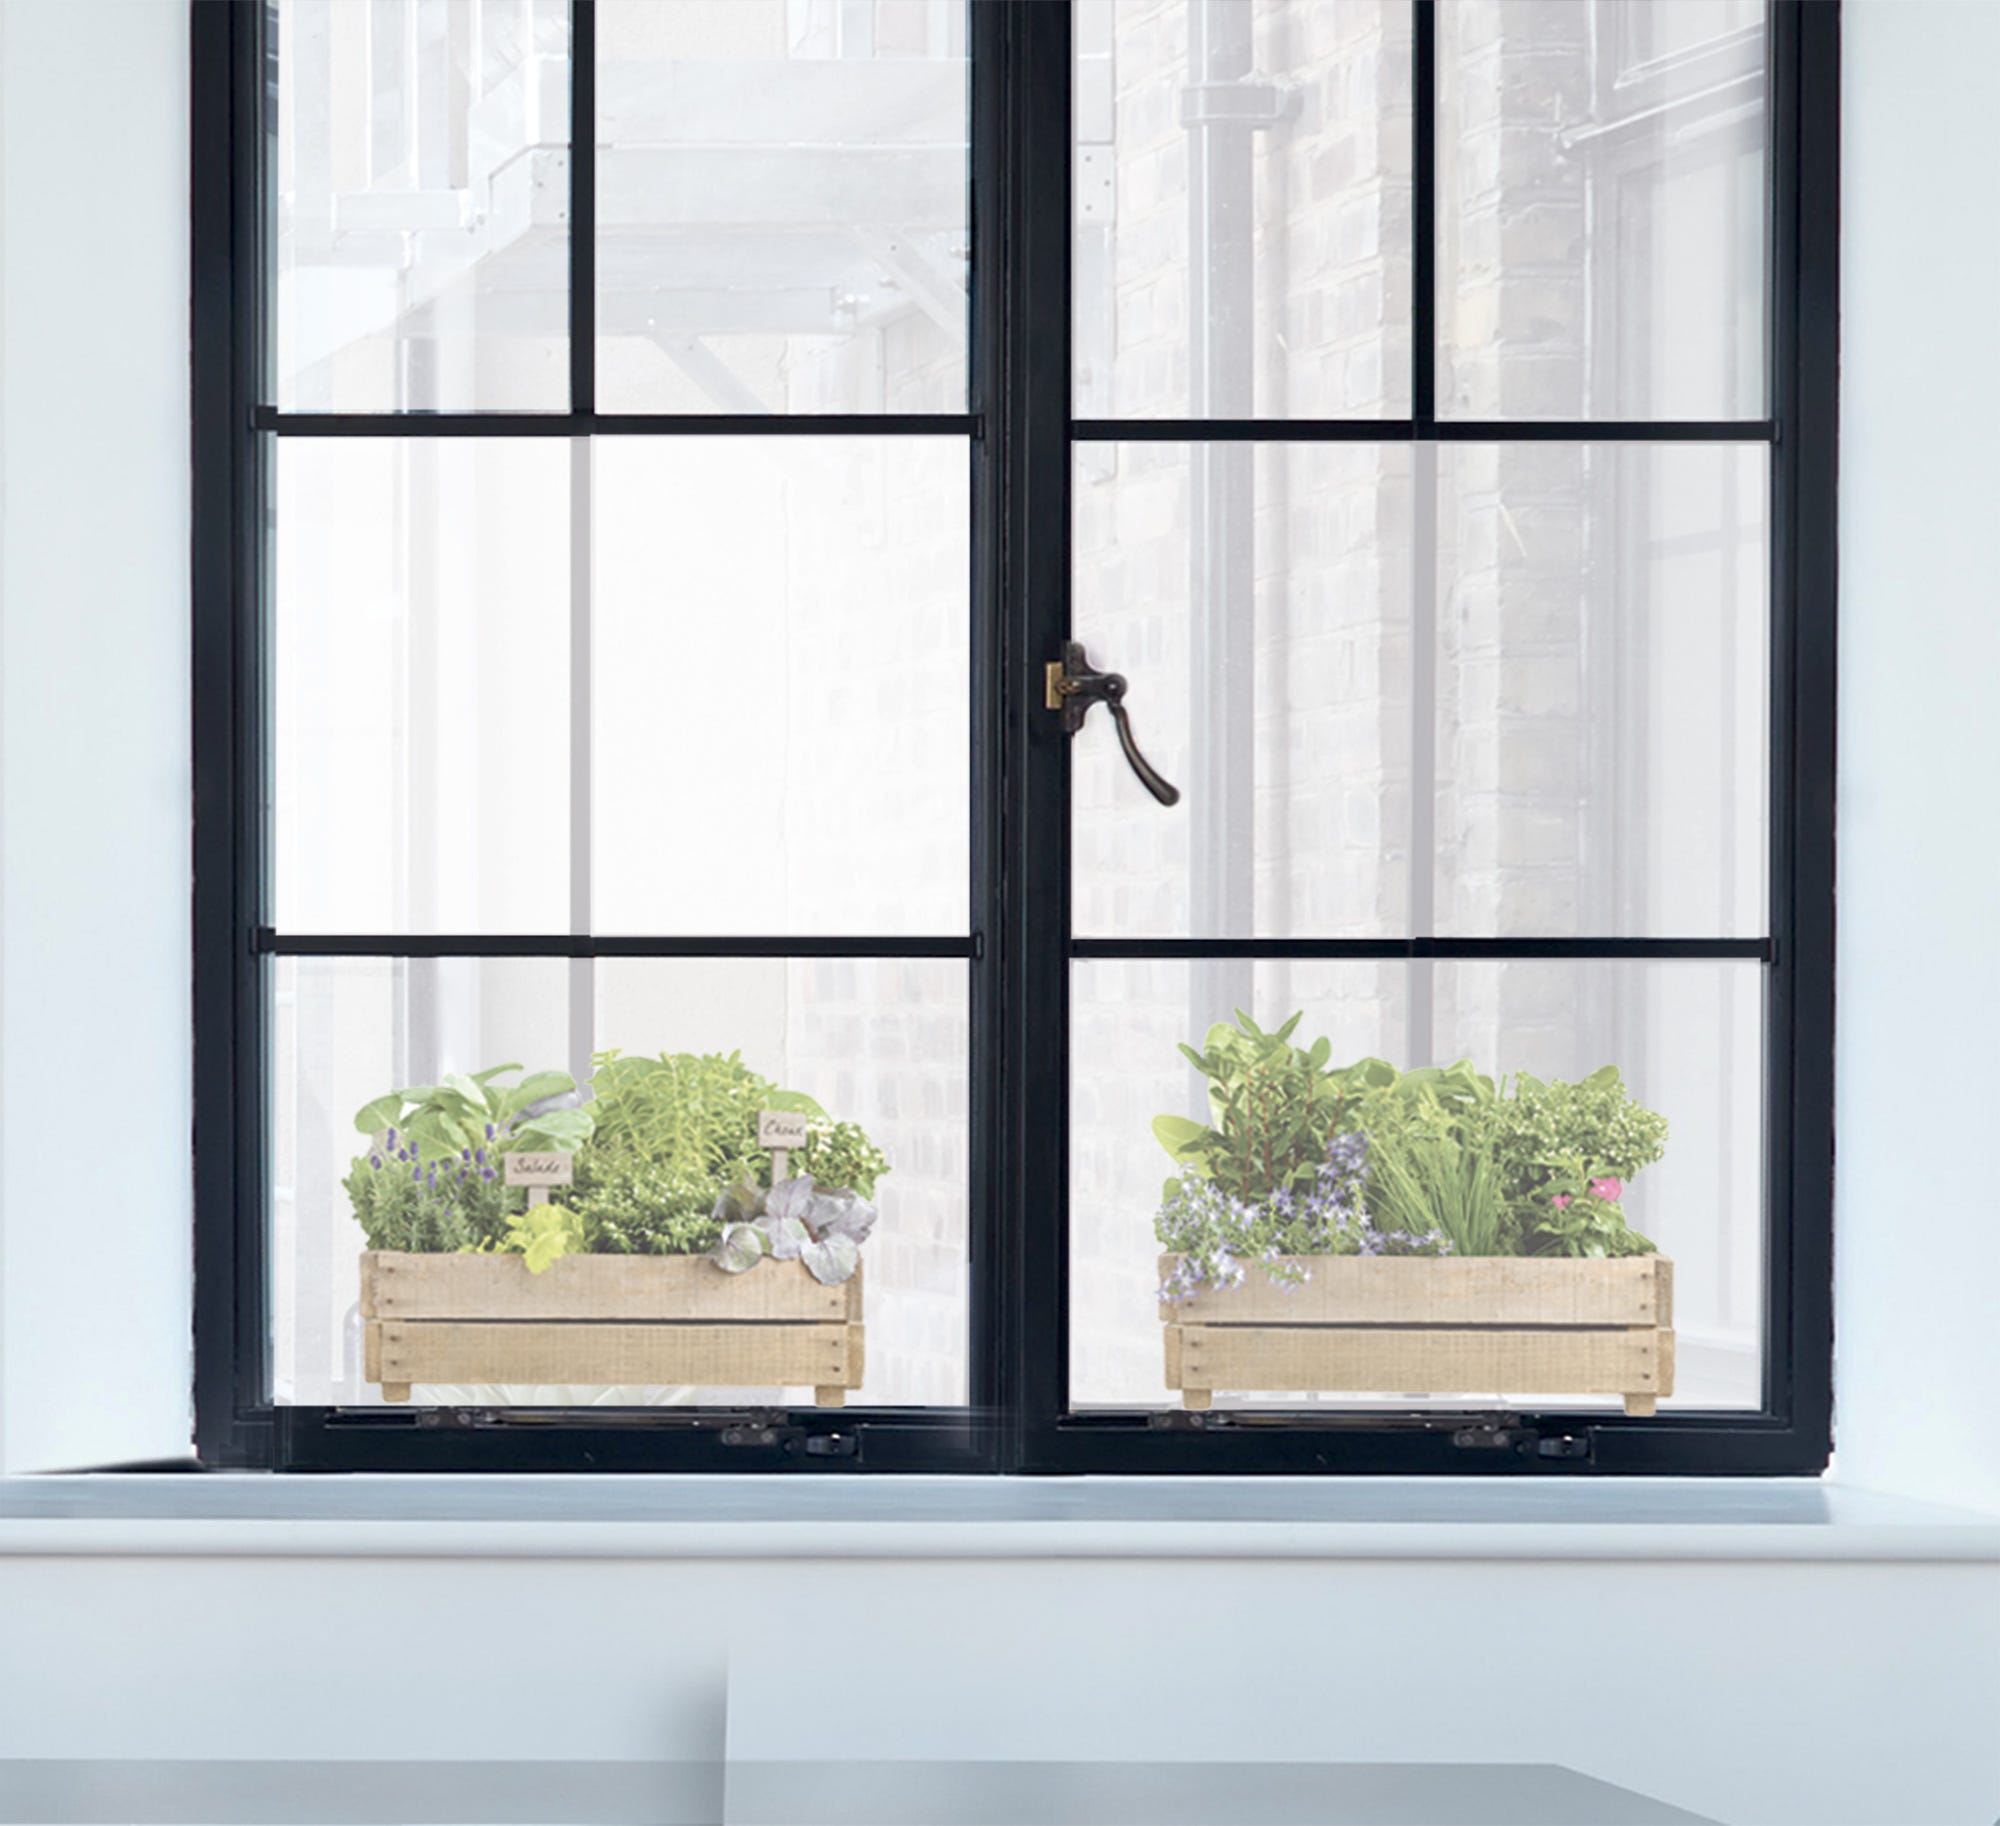 Sticker électrostatique pour vitre, pot de fleur pour décorer sa fenêtre,  original, utile sécurité transparence baie vitrée, 21 cm X 29,7 cm